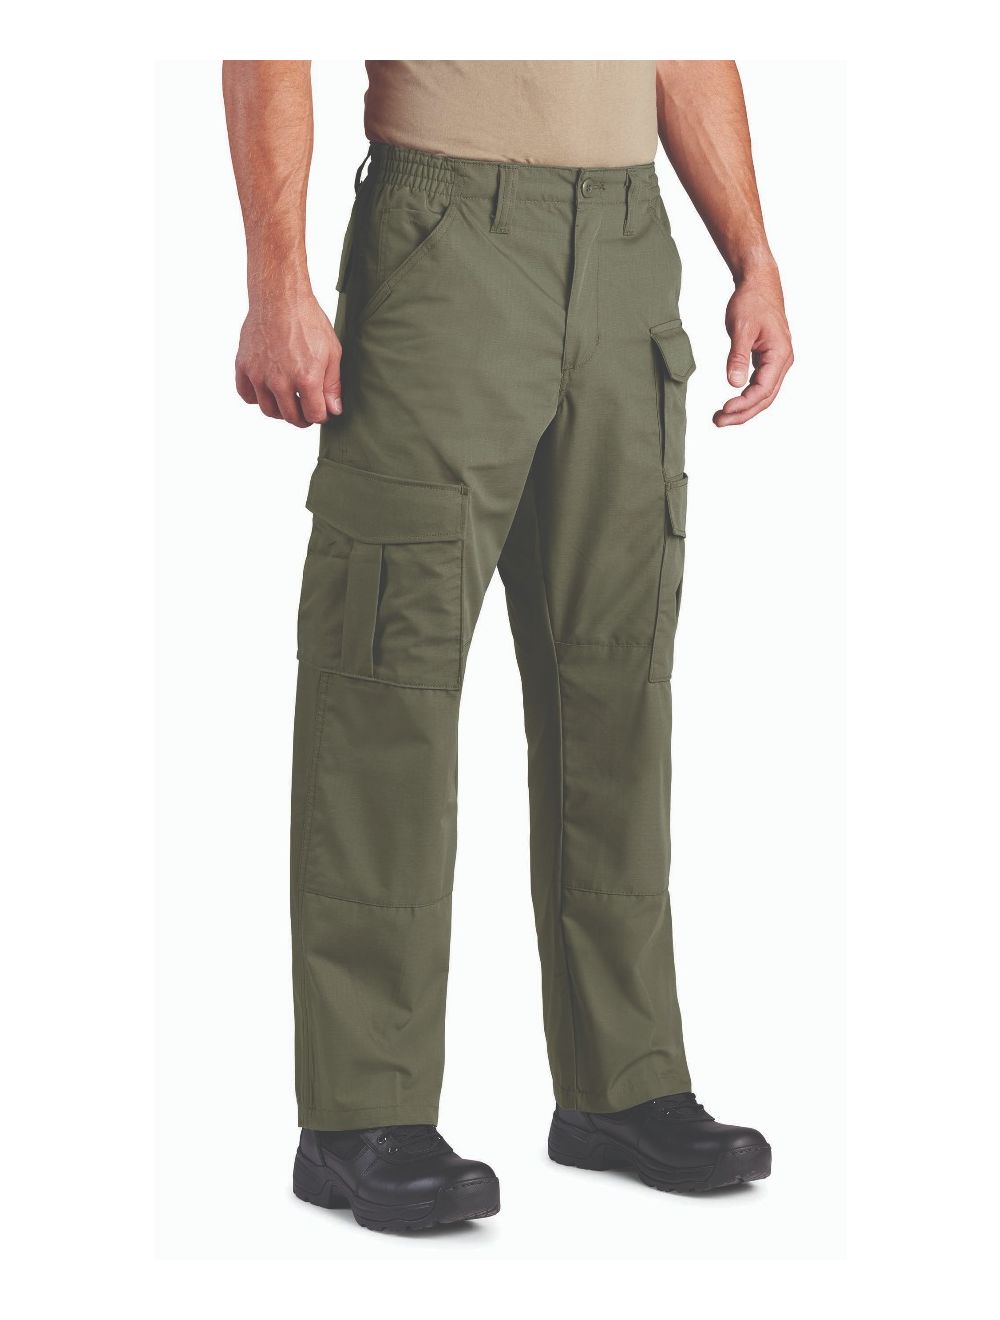 Propper Pants: Men's Tactical, Military & BDU Pants